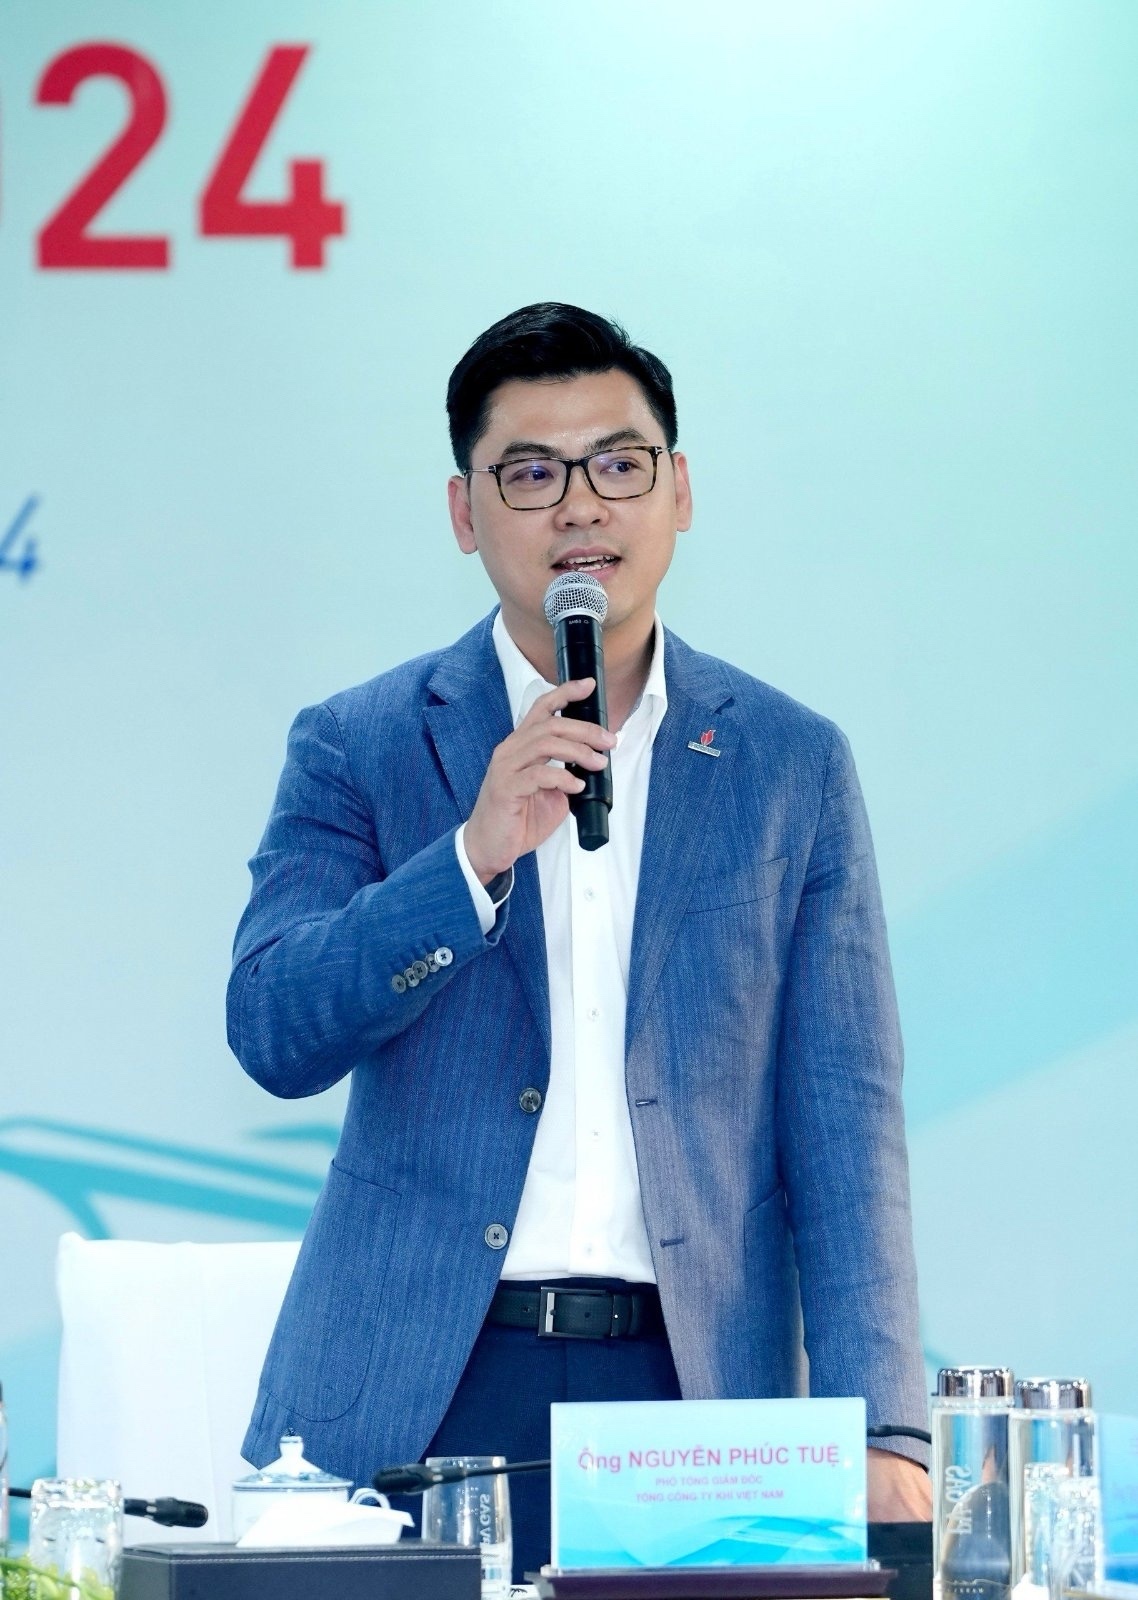 ông Nguyễn Phúc Tuệ, Phó Tổng Giám đốc PV GAS, Giám đốc PV GAS TRADING.